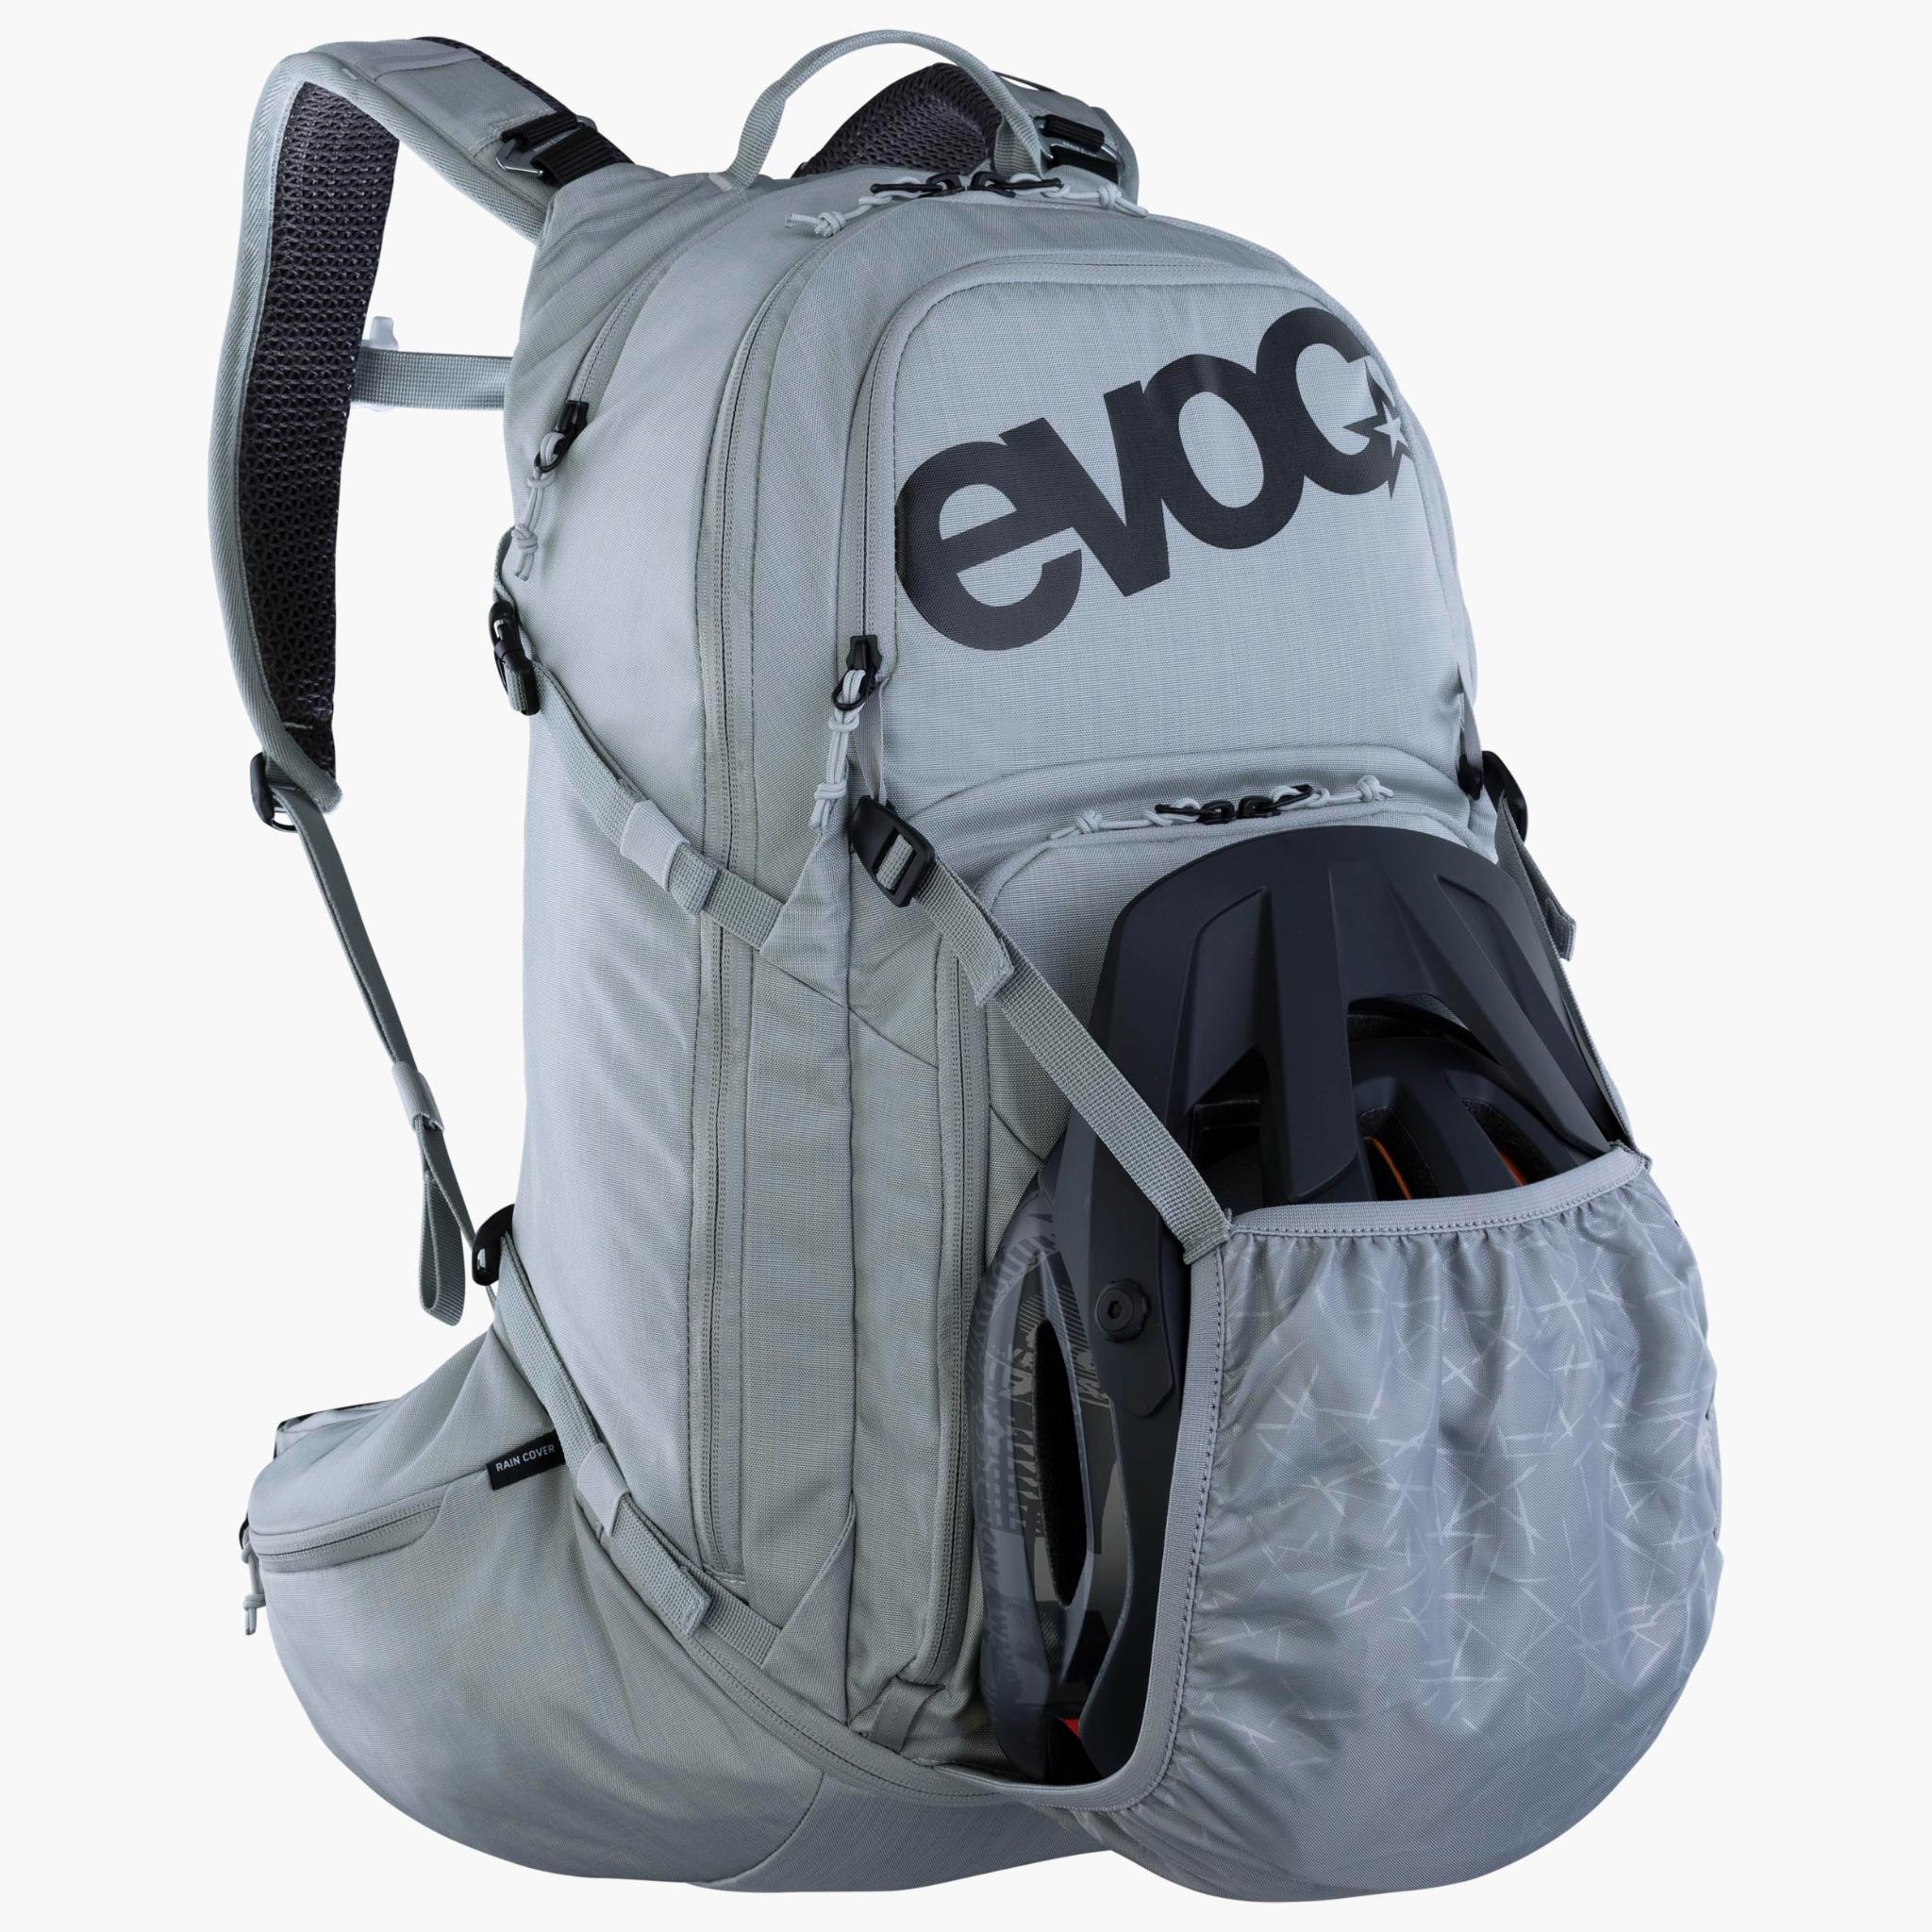 EVOC Explorer Pro 30 BACKPACK